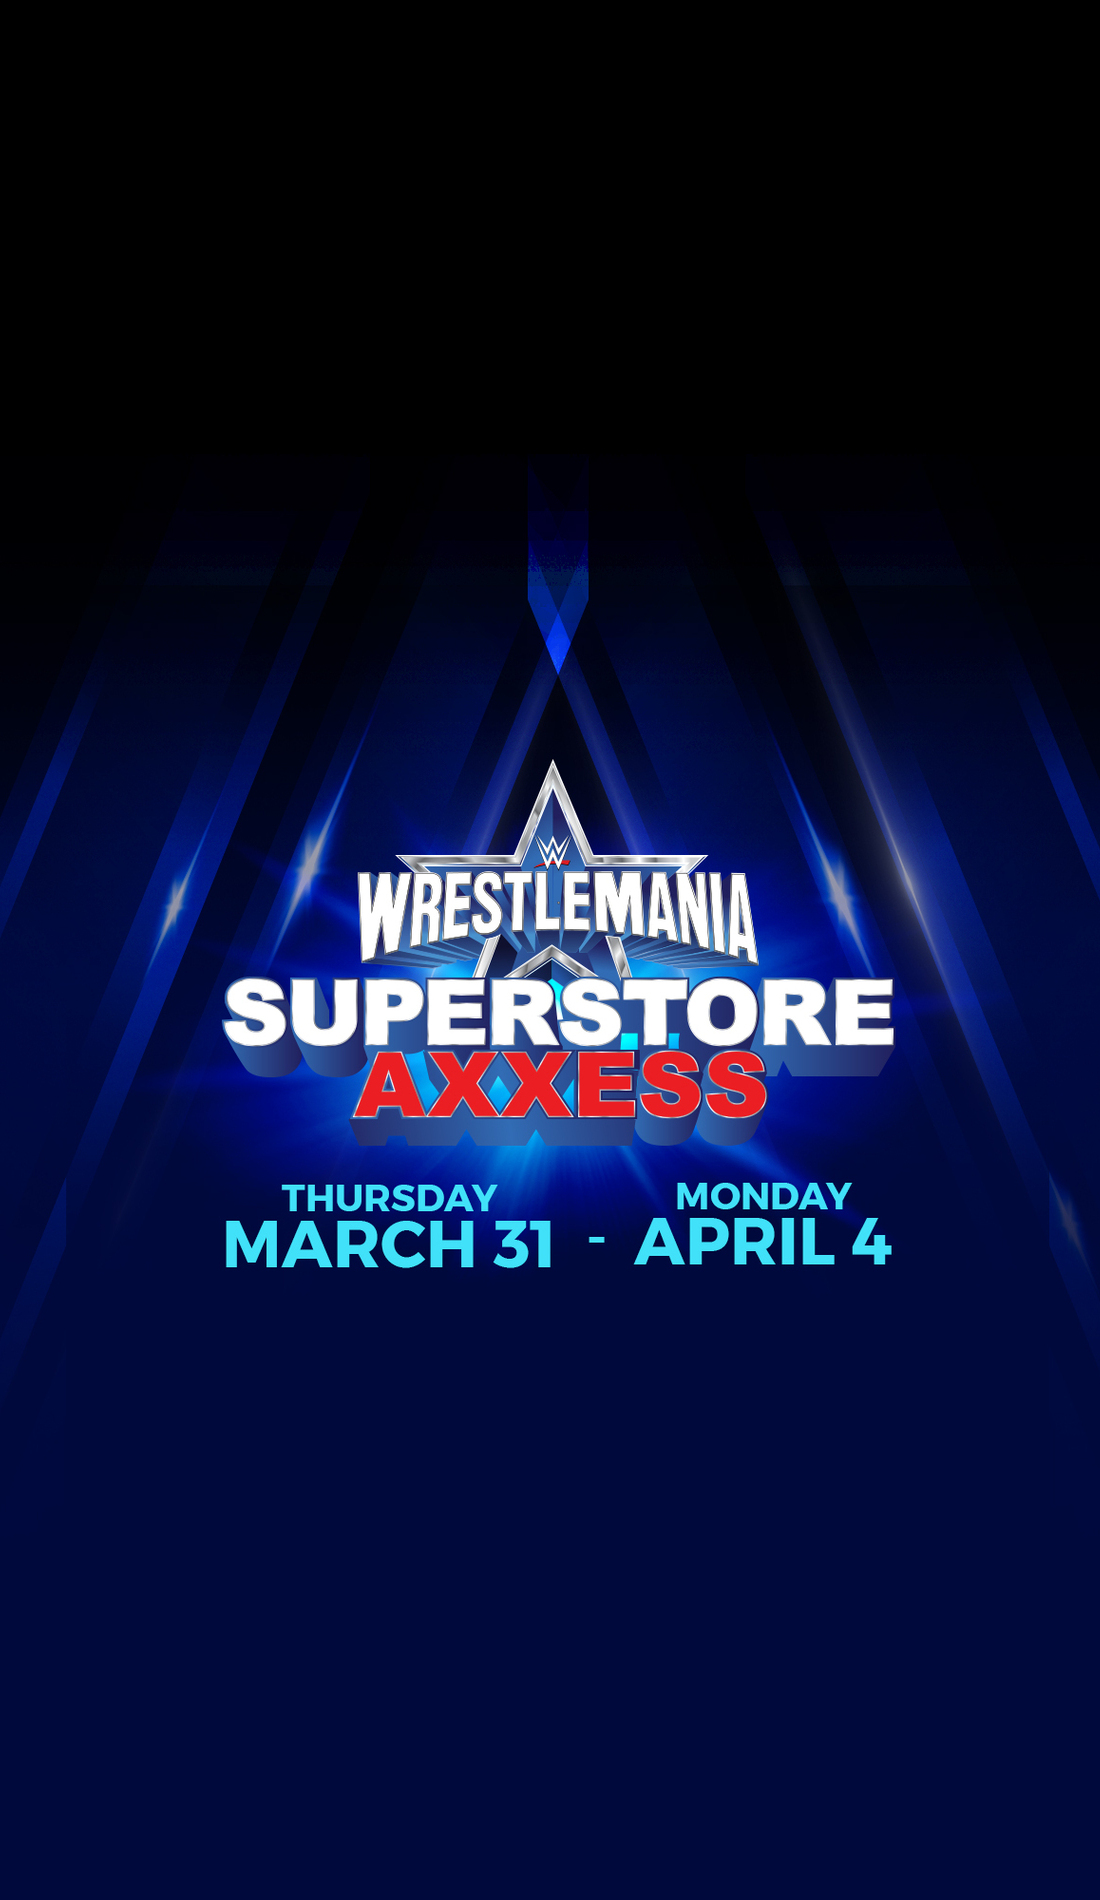 A Superstore Axxess & WrestleMania Panels live event